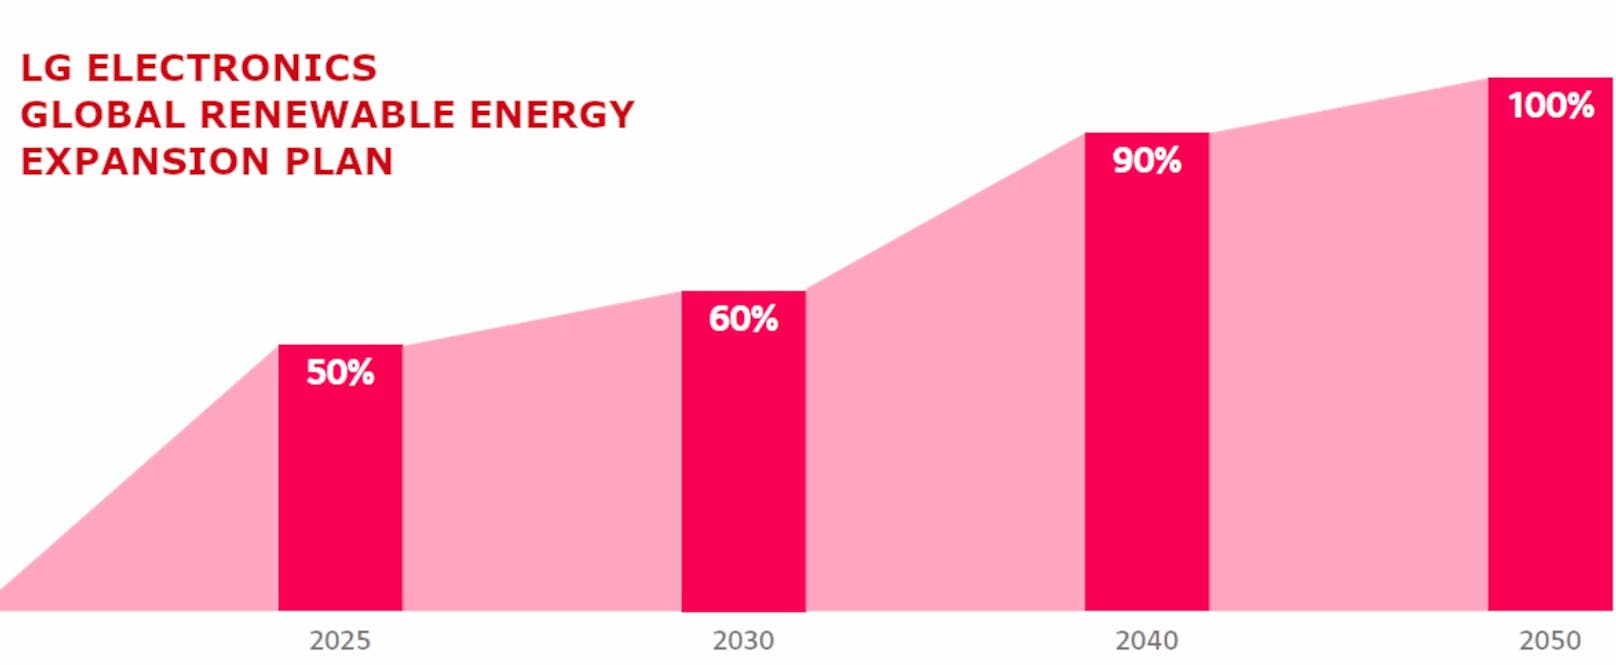 LG verpflichtet sich dazu, bis zum Jahr 2050 auf 100 Prozent erneuerbare Energien umzusteigen.